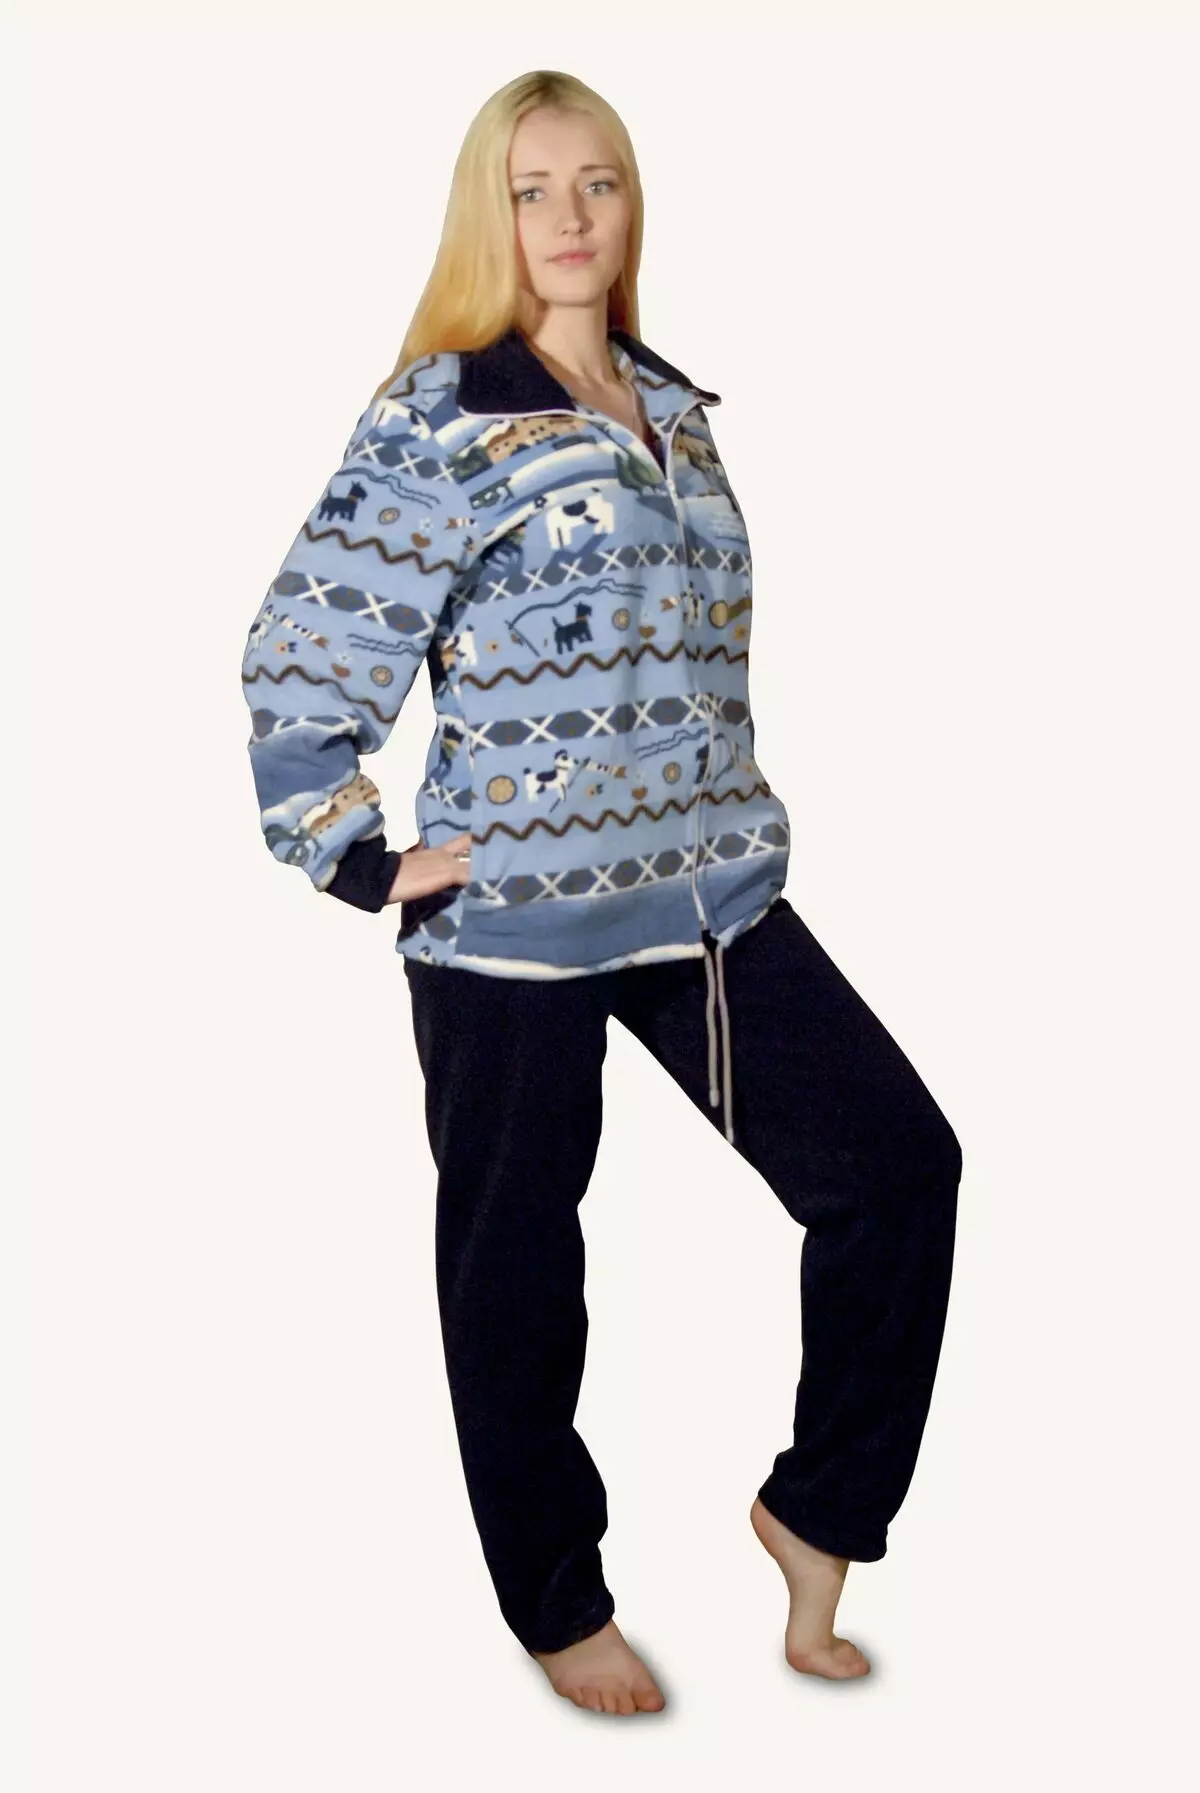 Žena tracksuit na fleece (47 fotek): fleece oblek pro sportovní třídy 14834_30